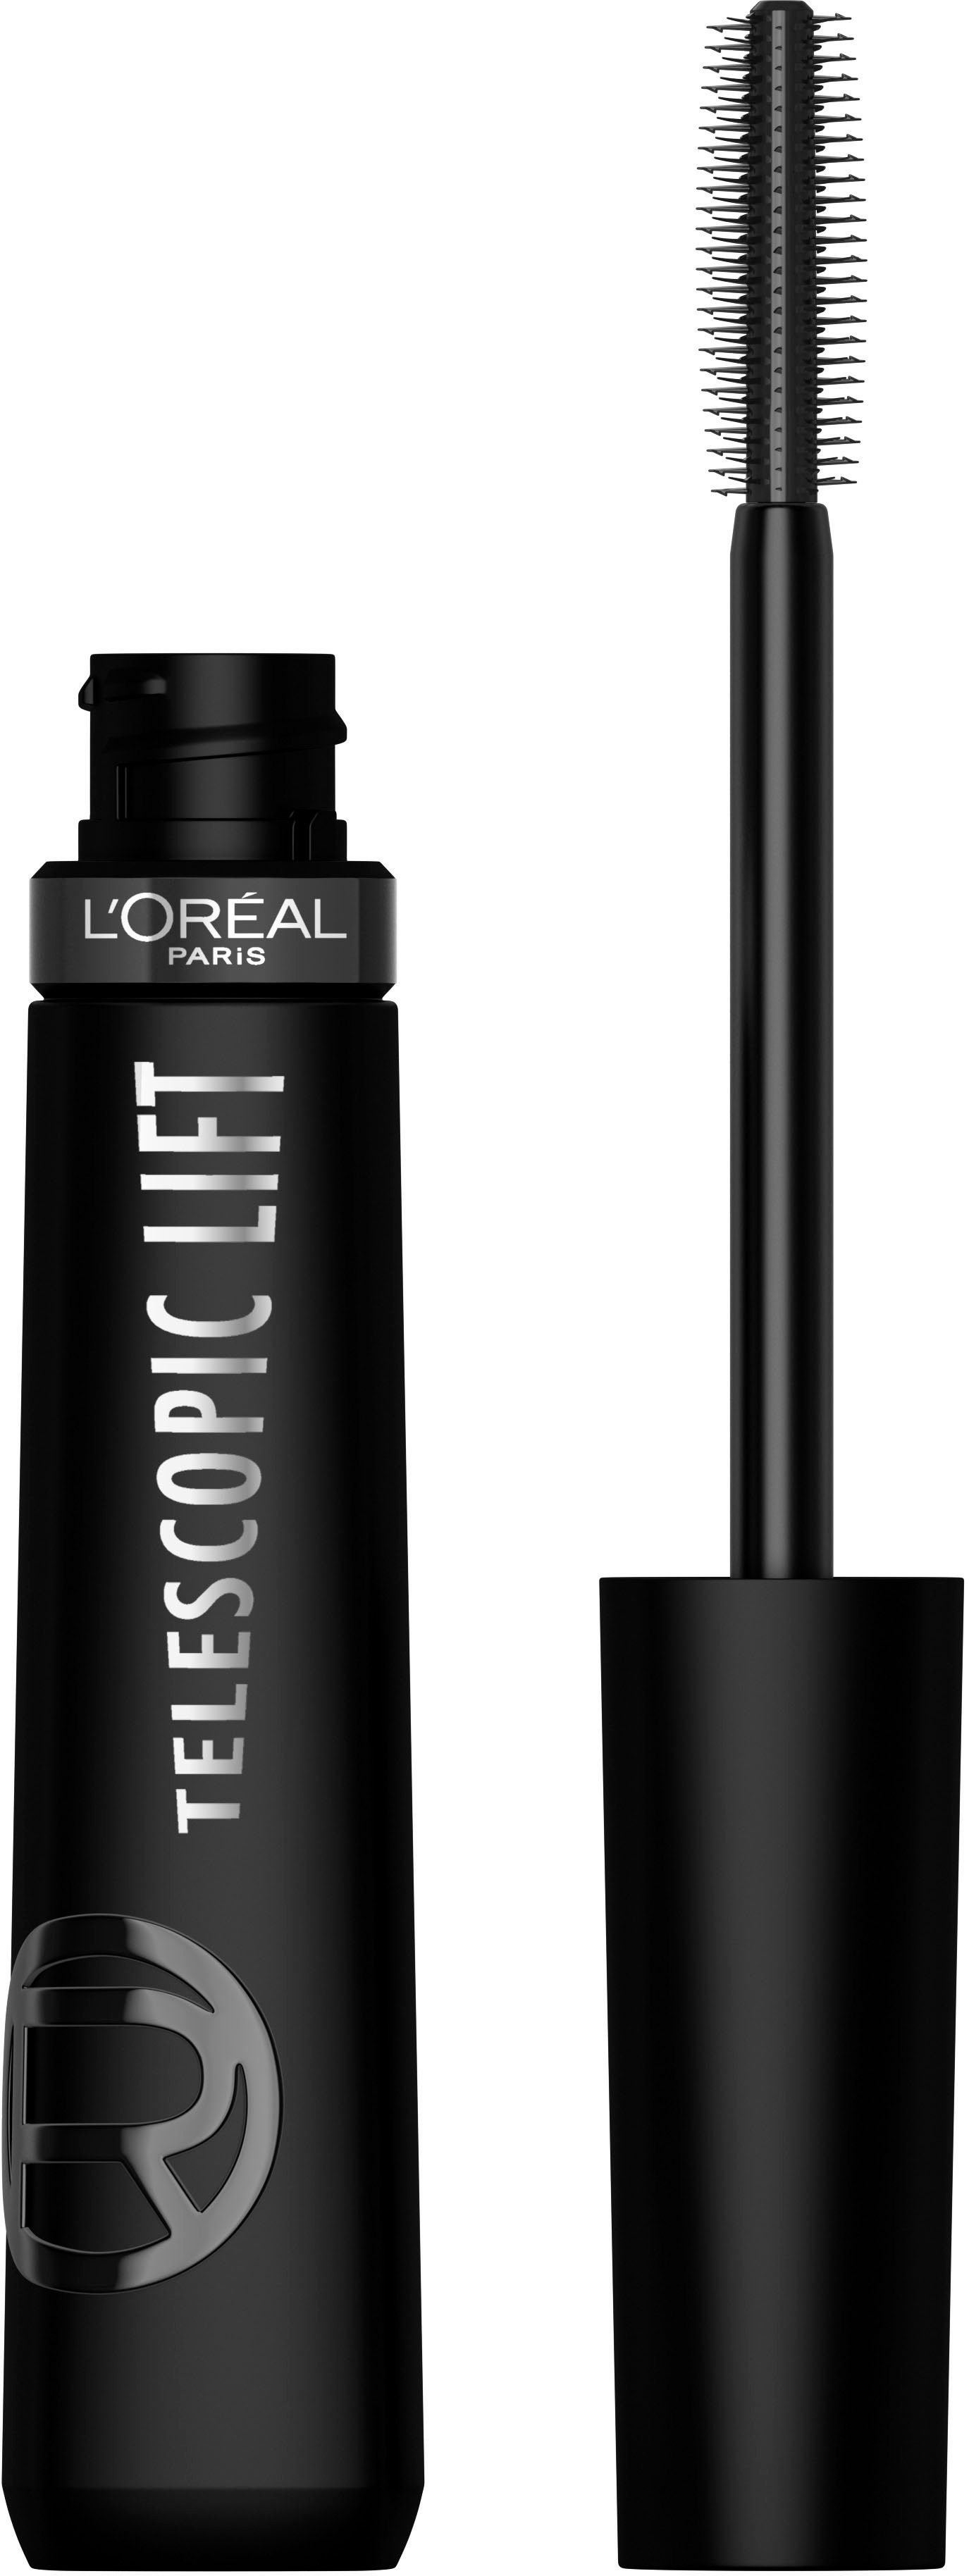 Mascara, Black Lift L'Oréal Wimperntusche mit Telescopic Paris Extra PARIS L'ORÉAL Mascara Lifting-Effekt